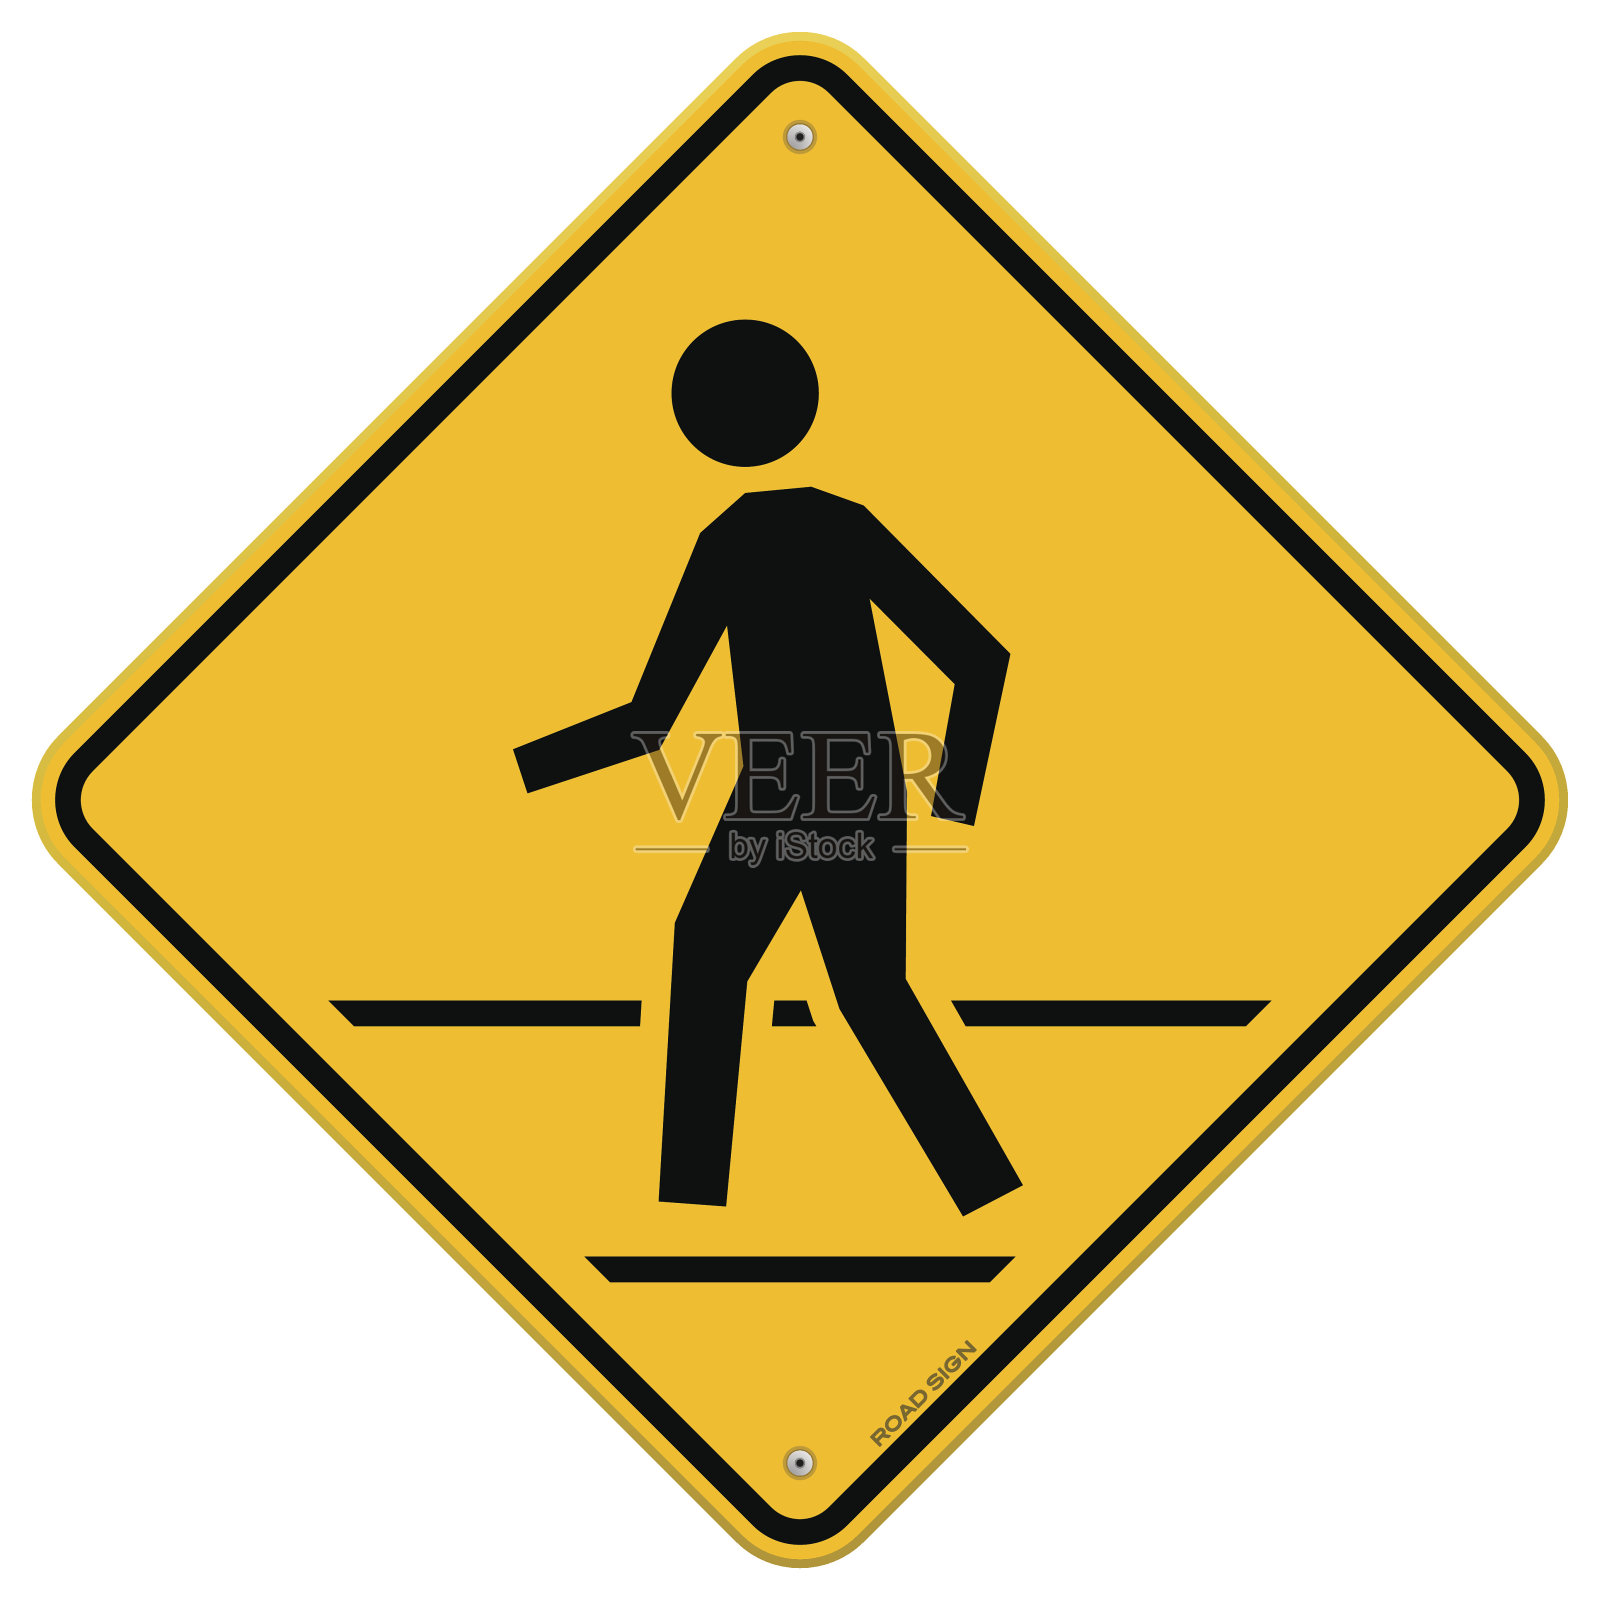 行人交通标志设计元素图片